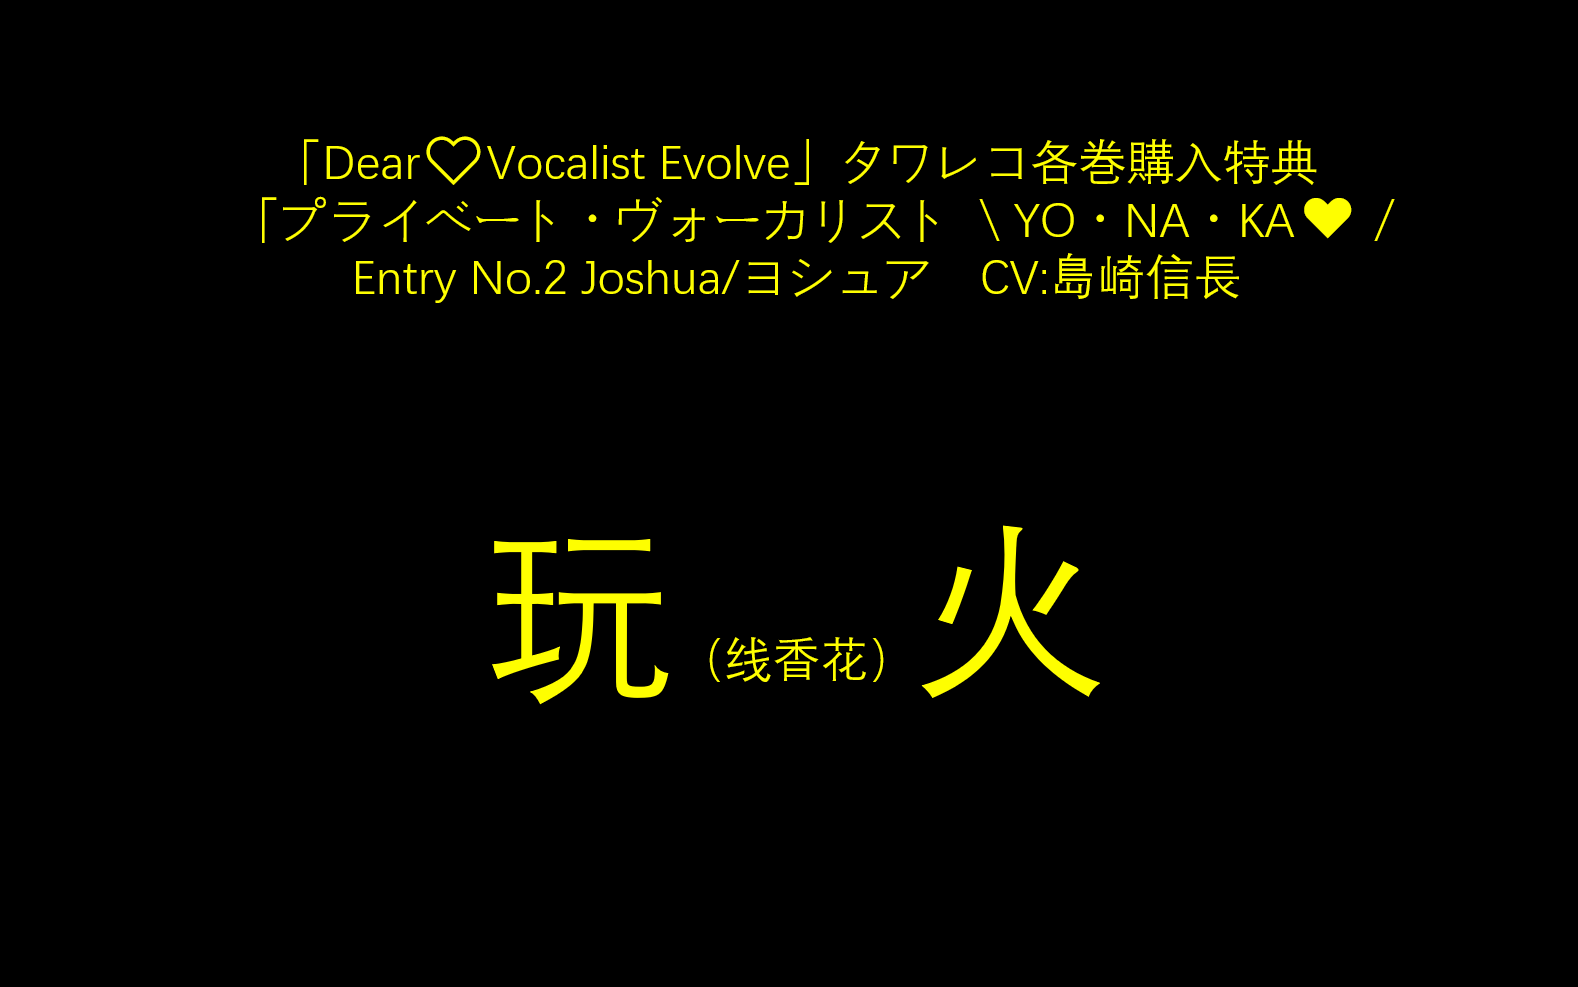 【字幕】【Dear Vocalist Evolve】【T店特典】Joshua/ヨシュア CV:島崎信長